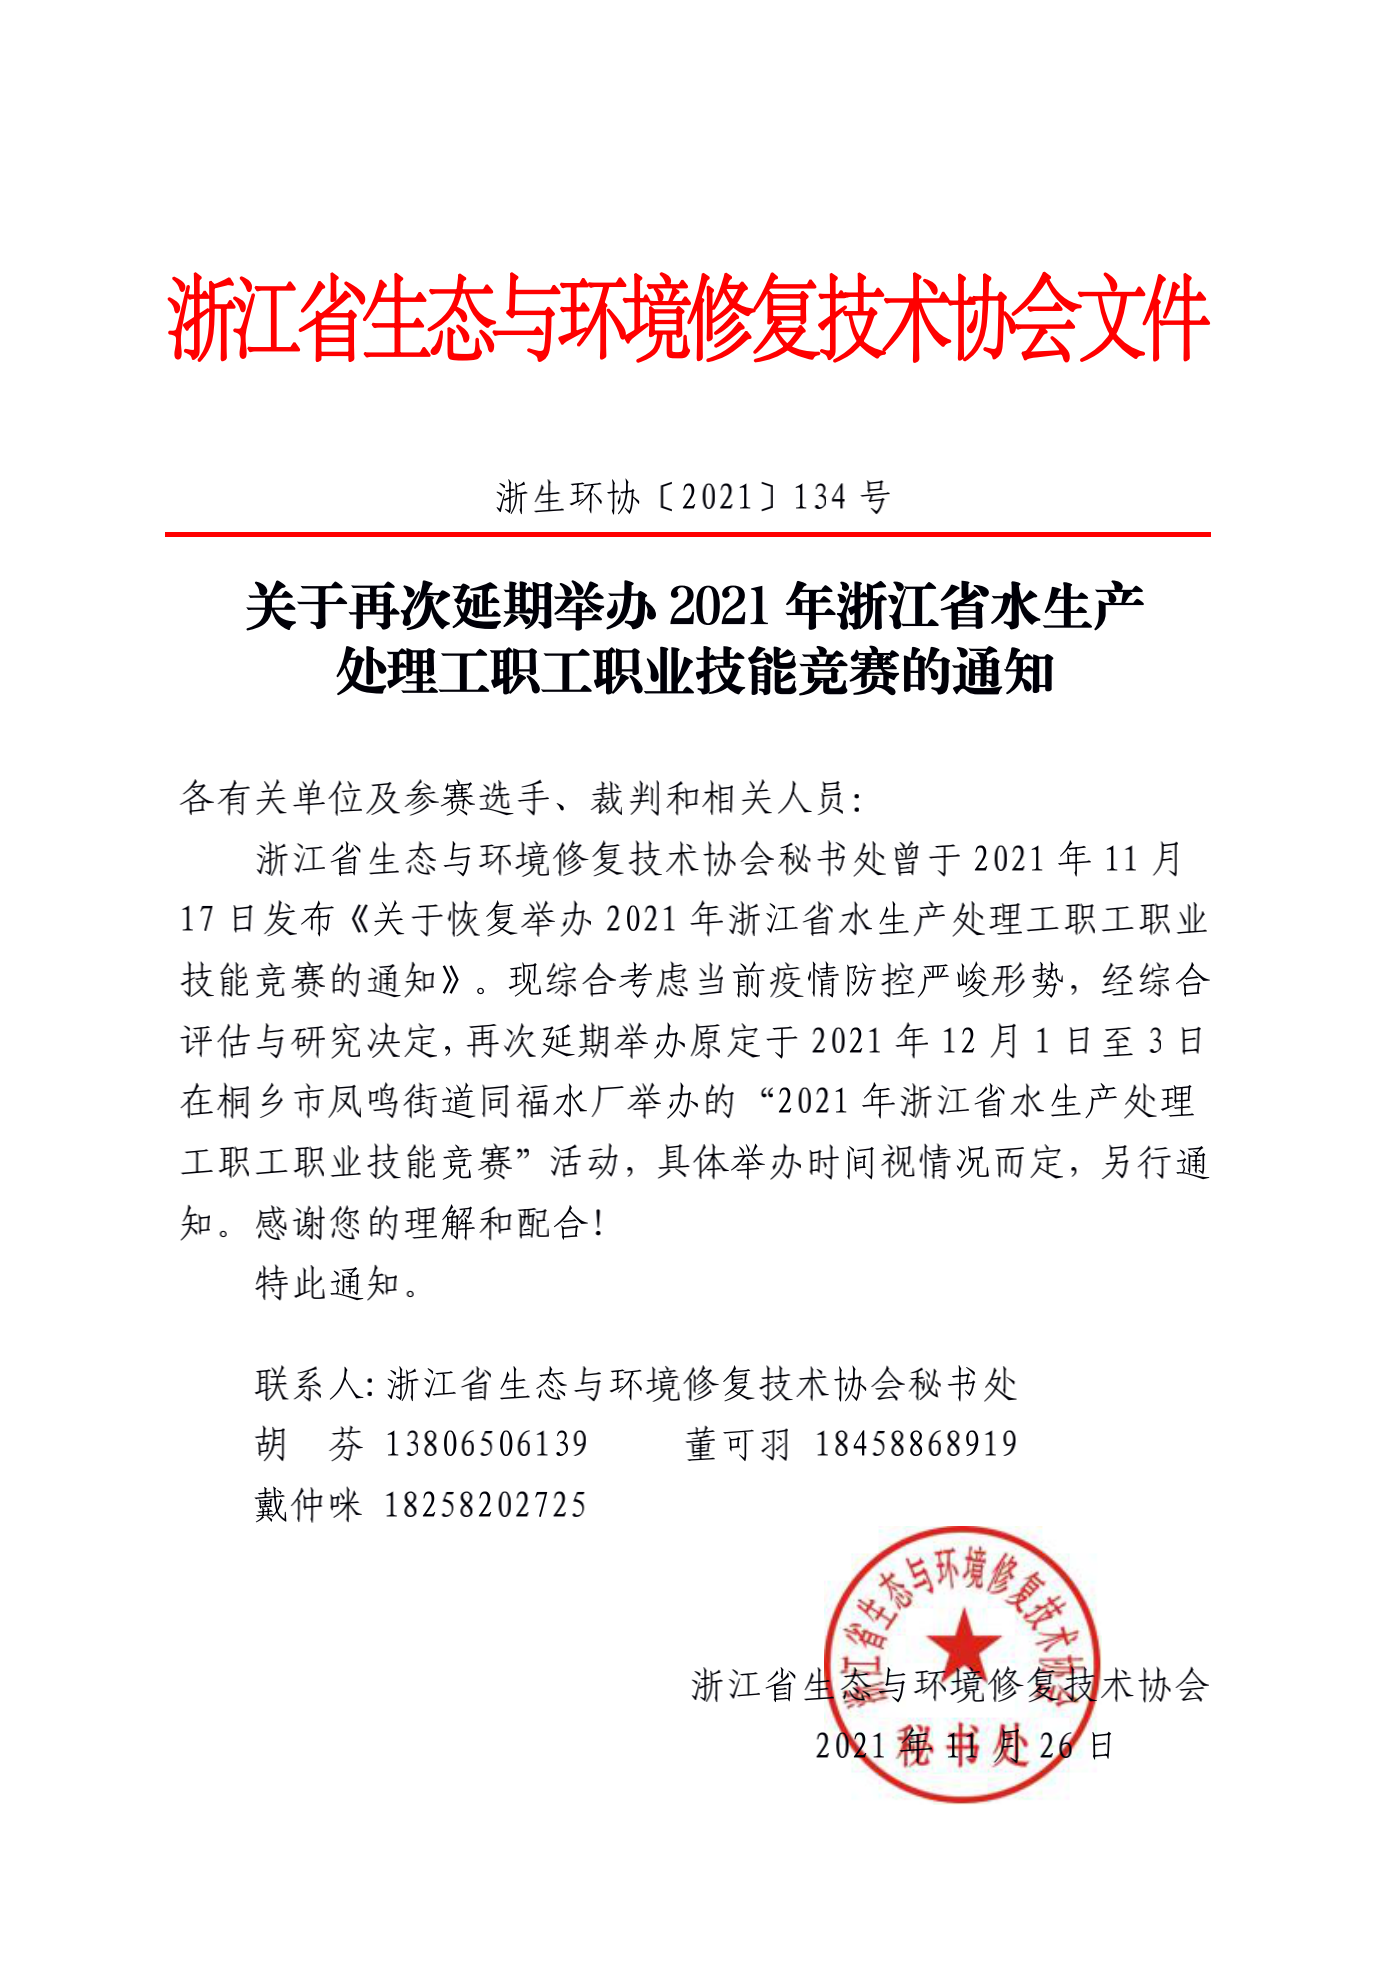 2021-134_关于再次延期举办2021年浙江省水生产处理工职工职业技能竞赛的通知_00.png